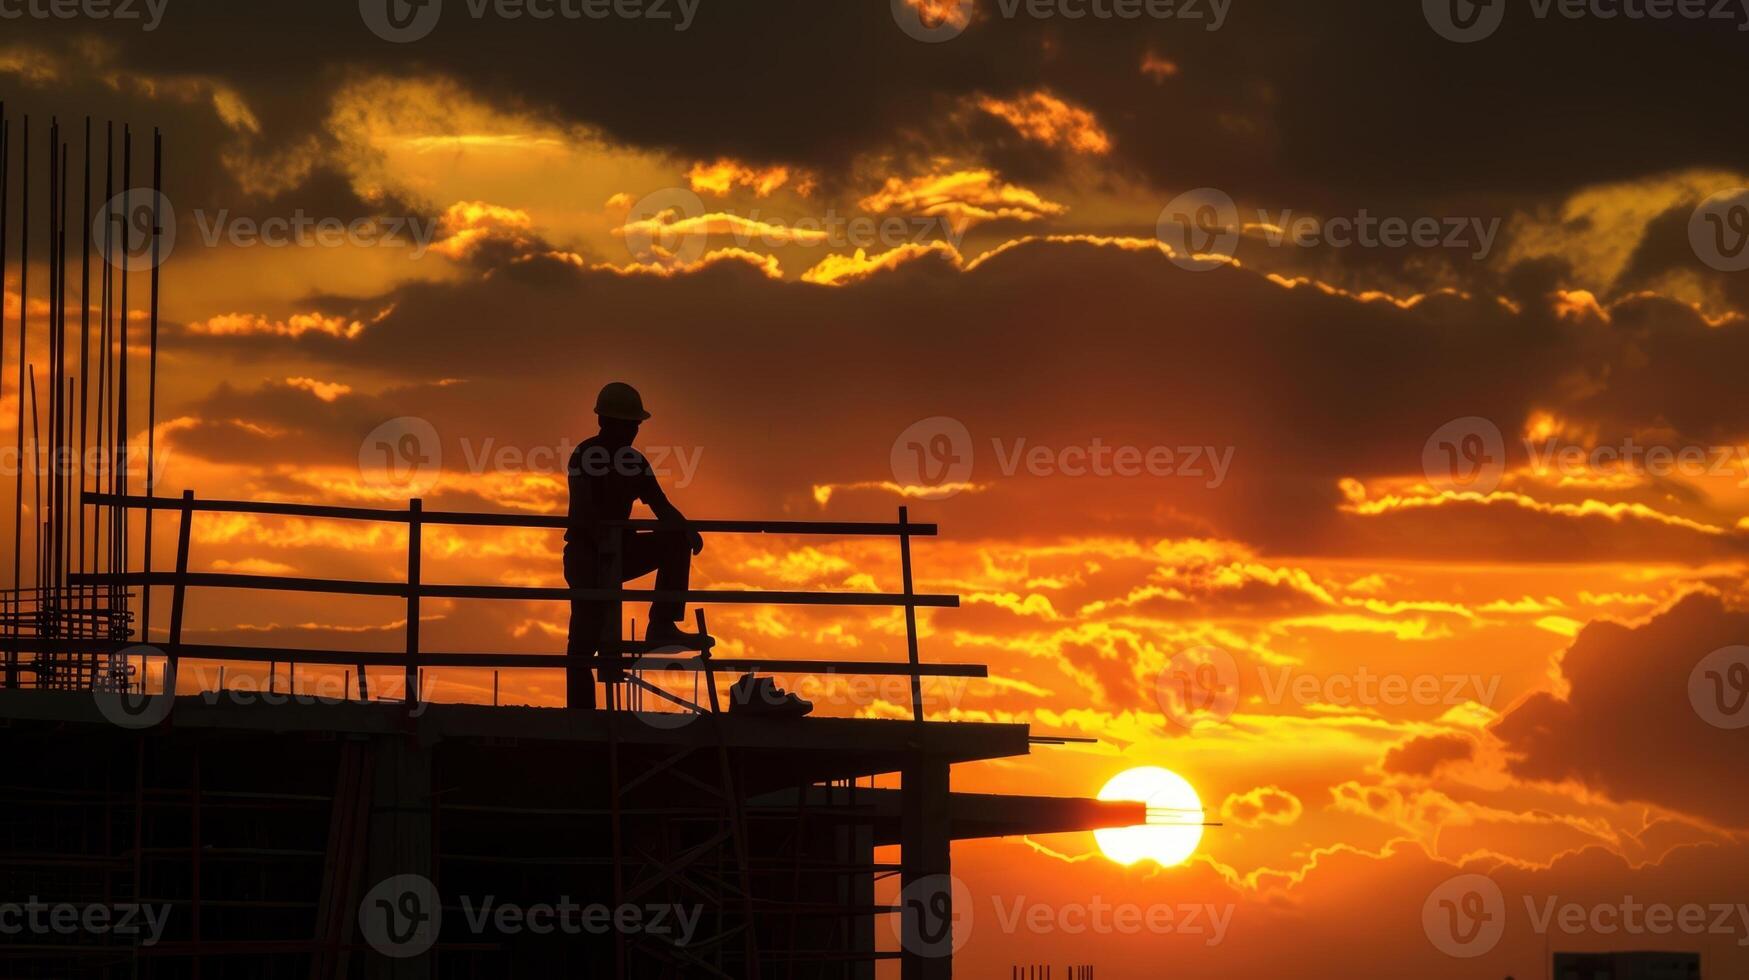 mitt i de kaotisk konstruktion webbplats de silhuett av en enslig arbetstagare kan vara sett gazing av in i de fantastisk solnedgång tar en ögonblick till uppskatta de skönhet runt om dem foto